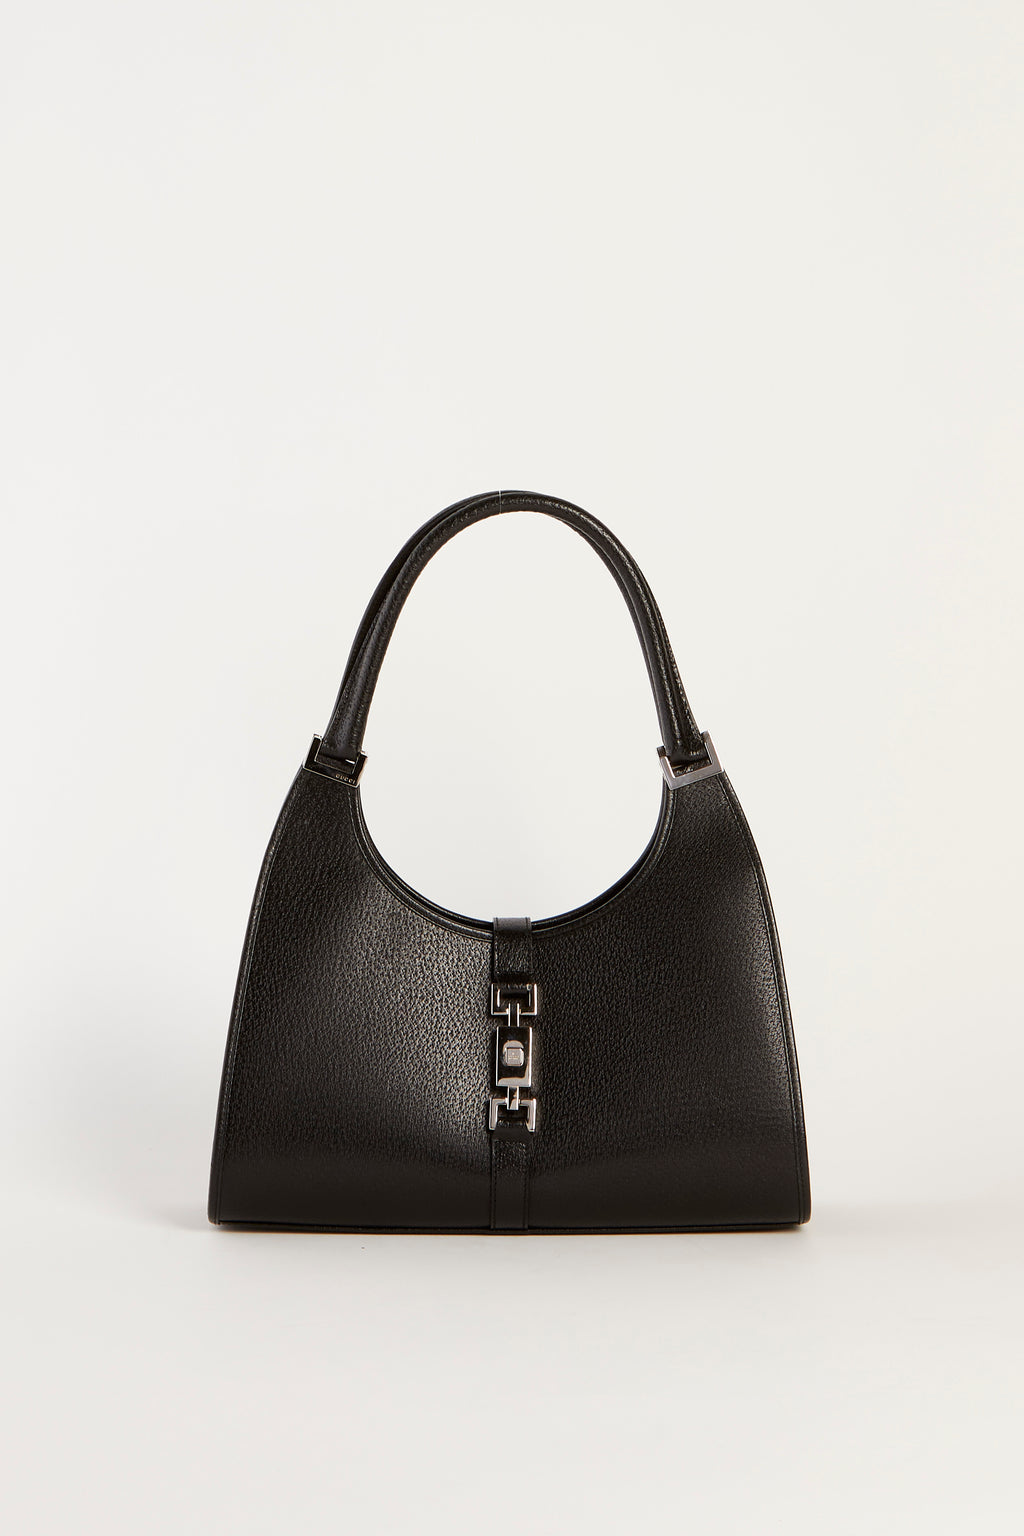 Vintage Gucci Black Leather Jackie Shoulder Bag